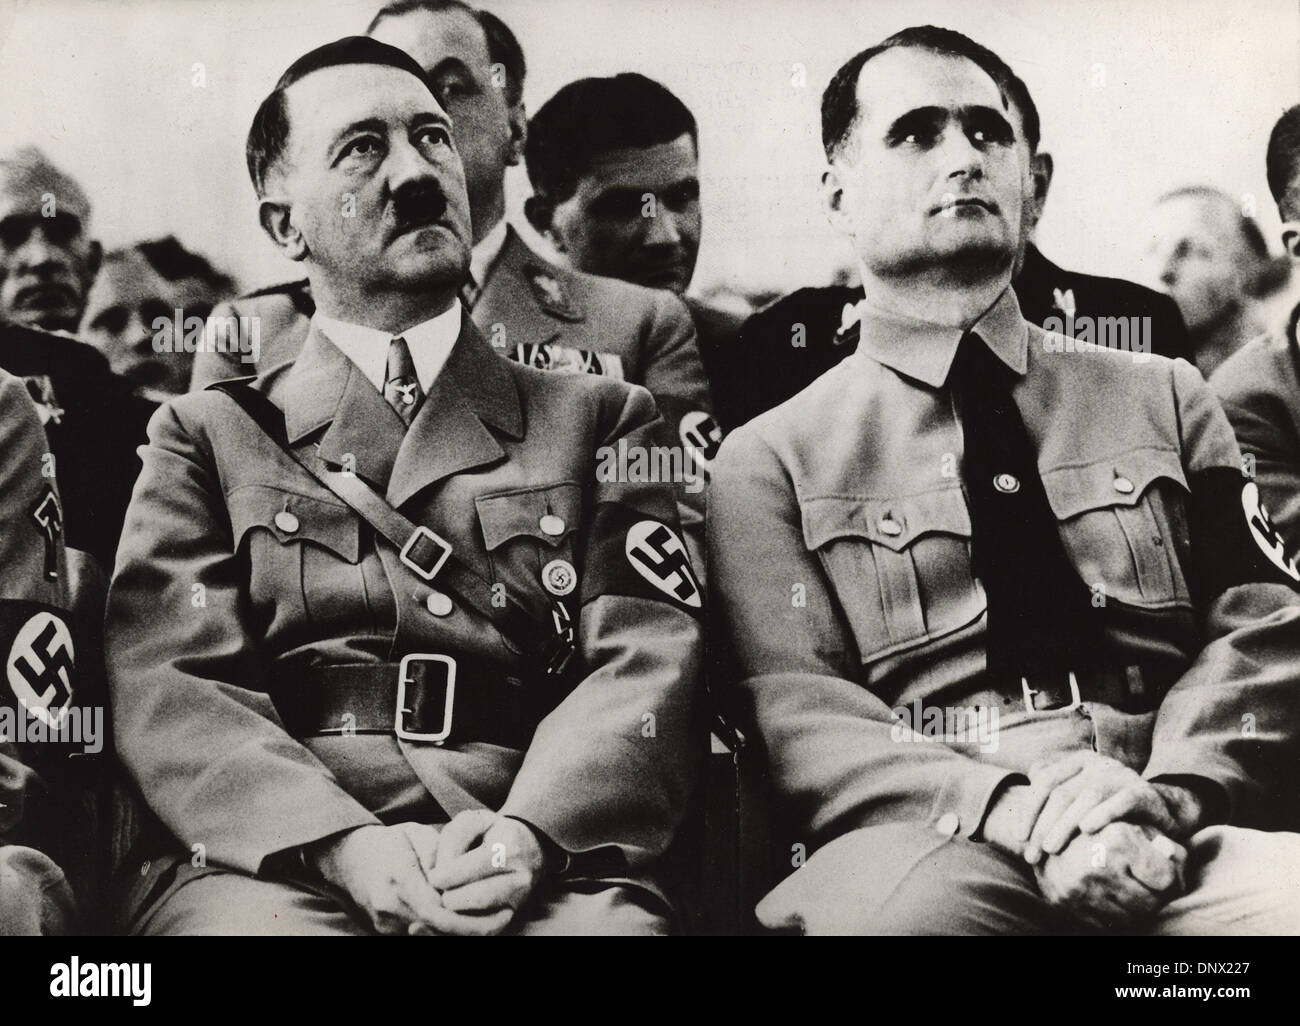 Sett. 1, 1939 - Berlino, Germania - "Il Fuehrer' leader nazista ADOLF HITLER e il suo 'deputy' Rudolf Hess seduta in un evento durante il periodo nazista. (Credito Immagine: © Keystone Pictures USA/ZUMAPRESS.com) Foto Stock